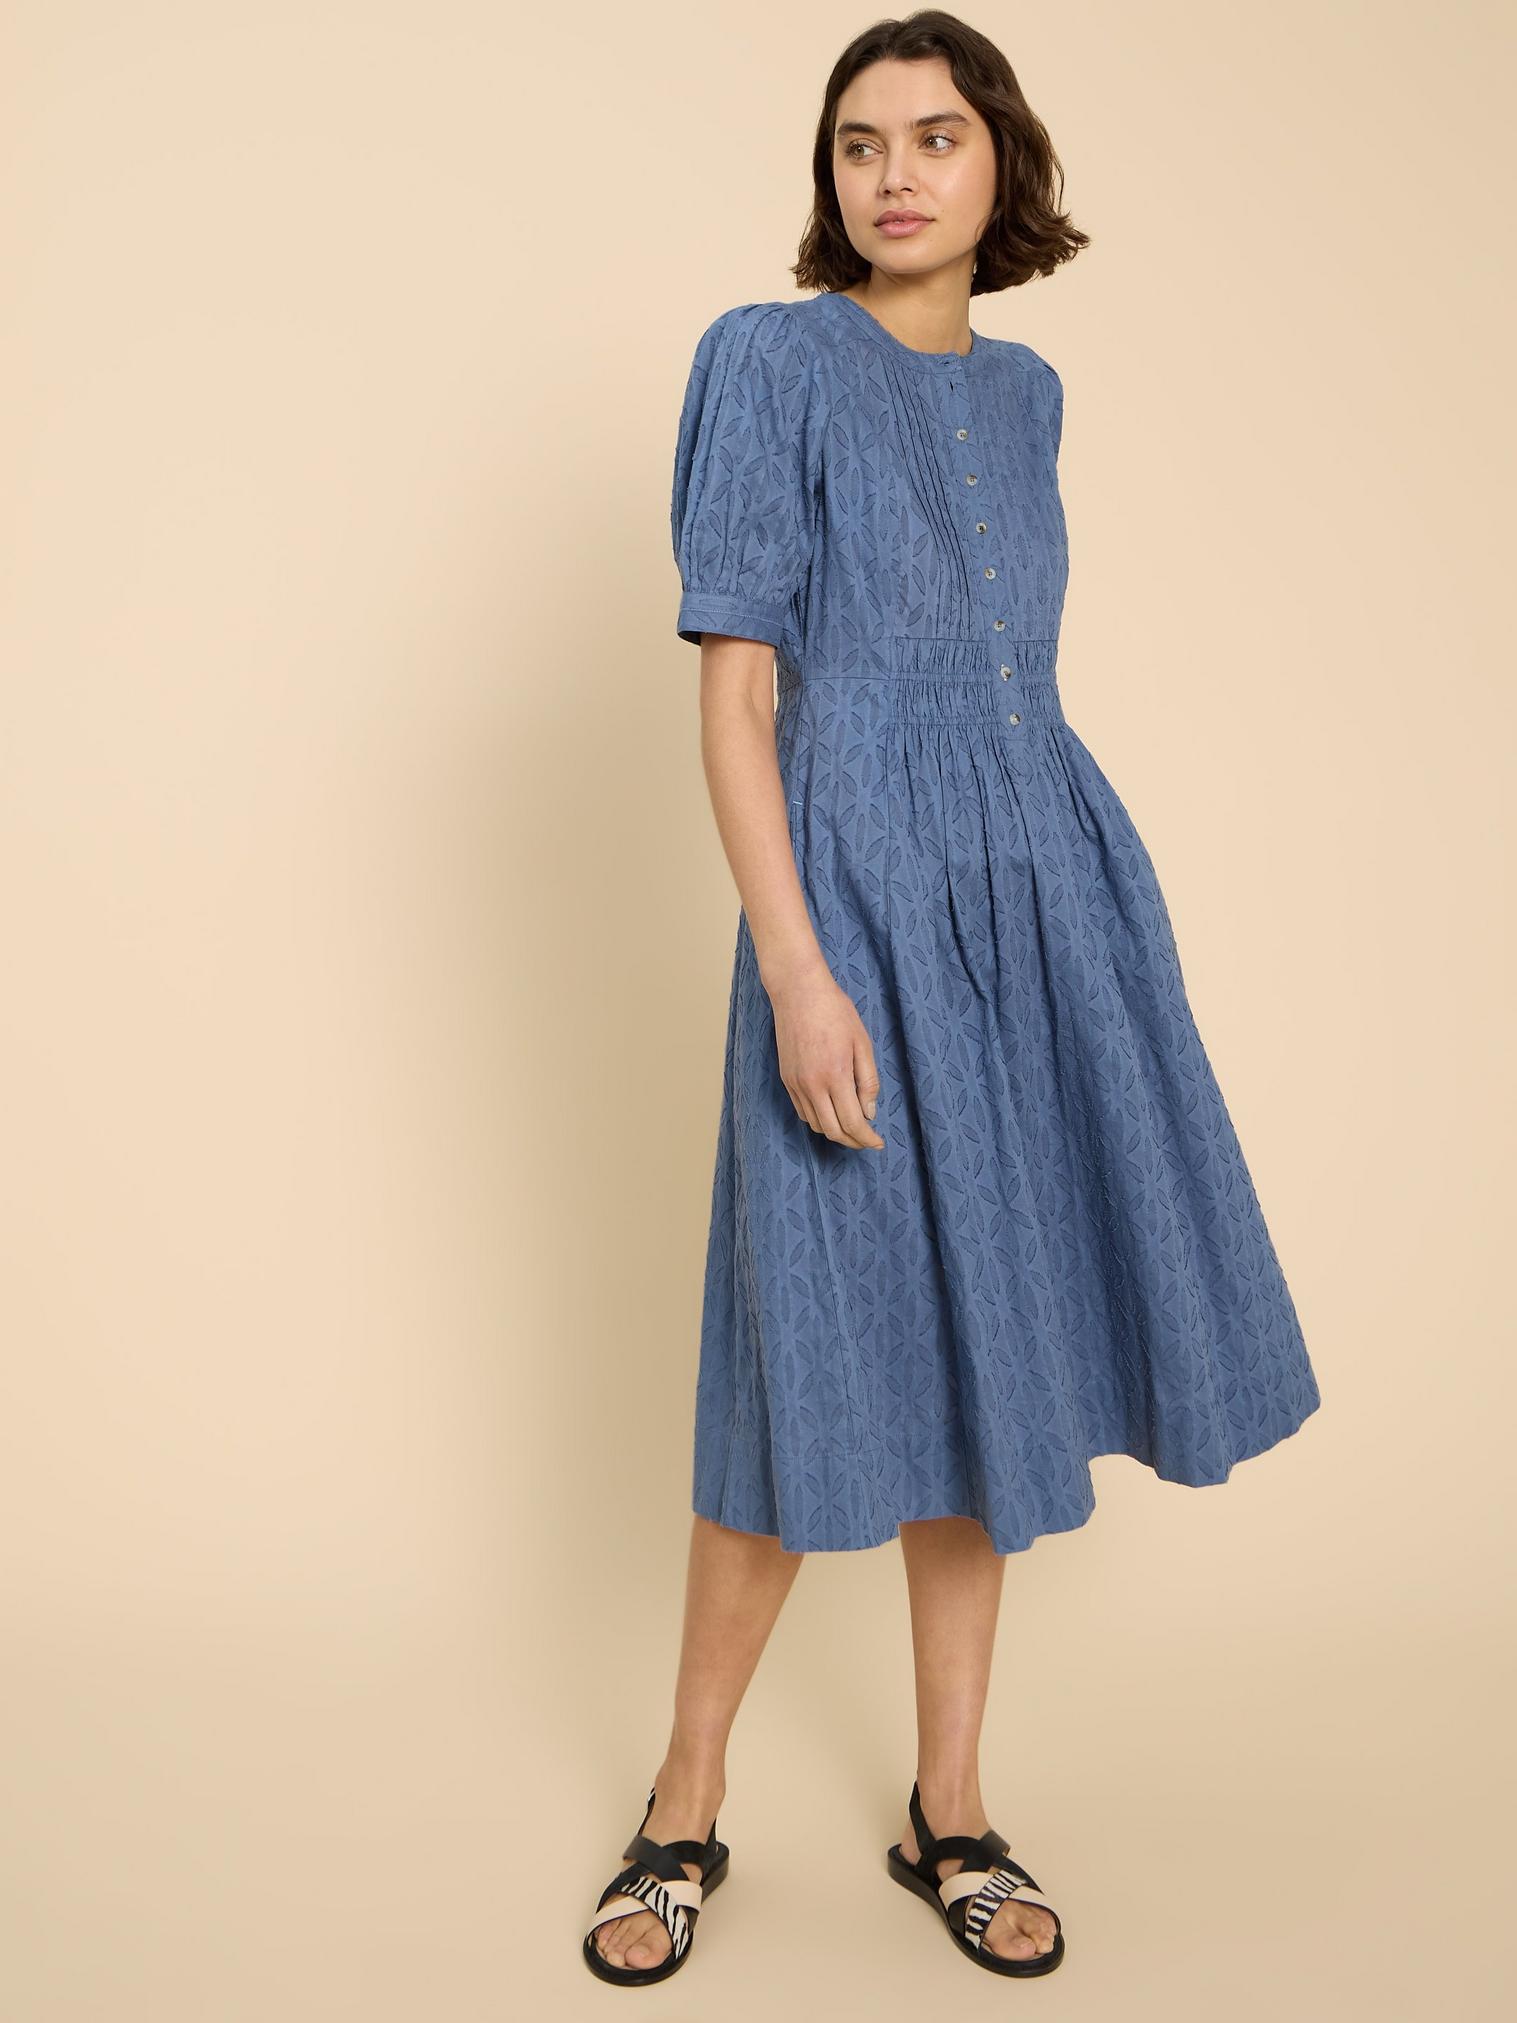 Celeste Short Sleeve Midi Dress in MID BLUE - MODEL DETAIL